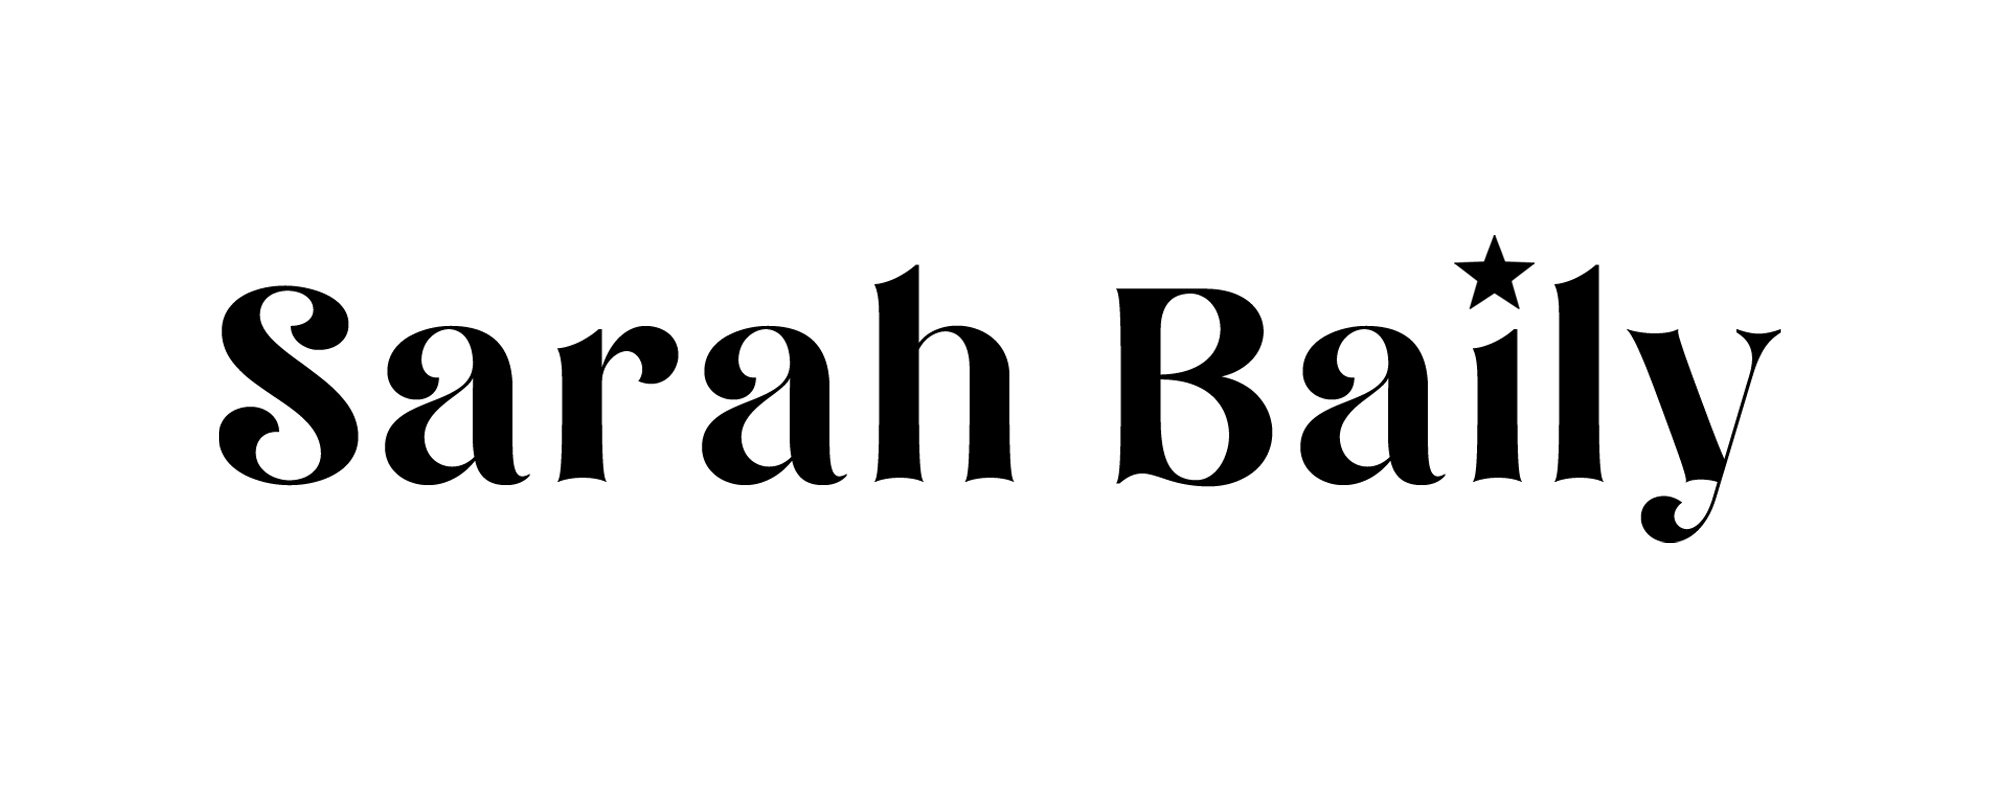 Sarah Baily